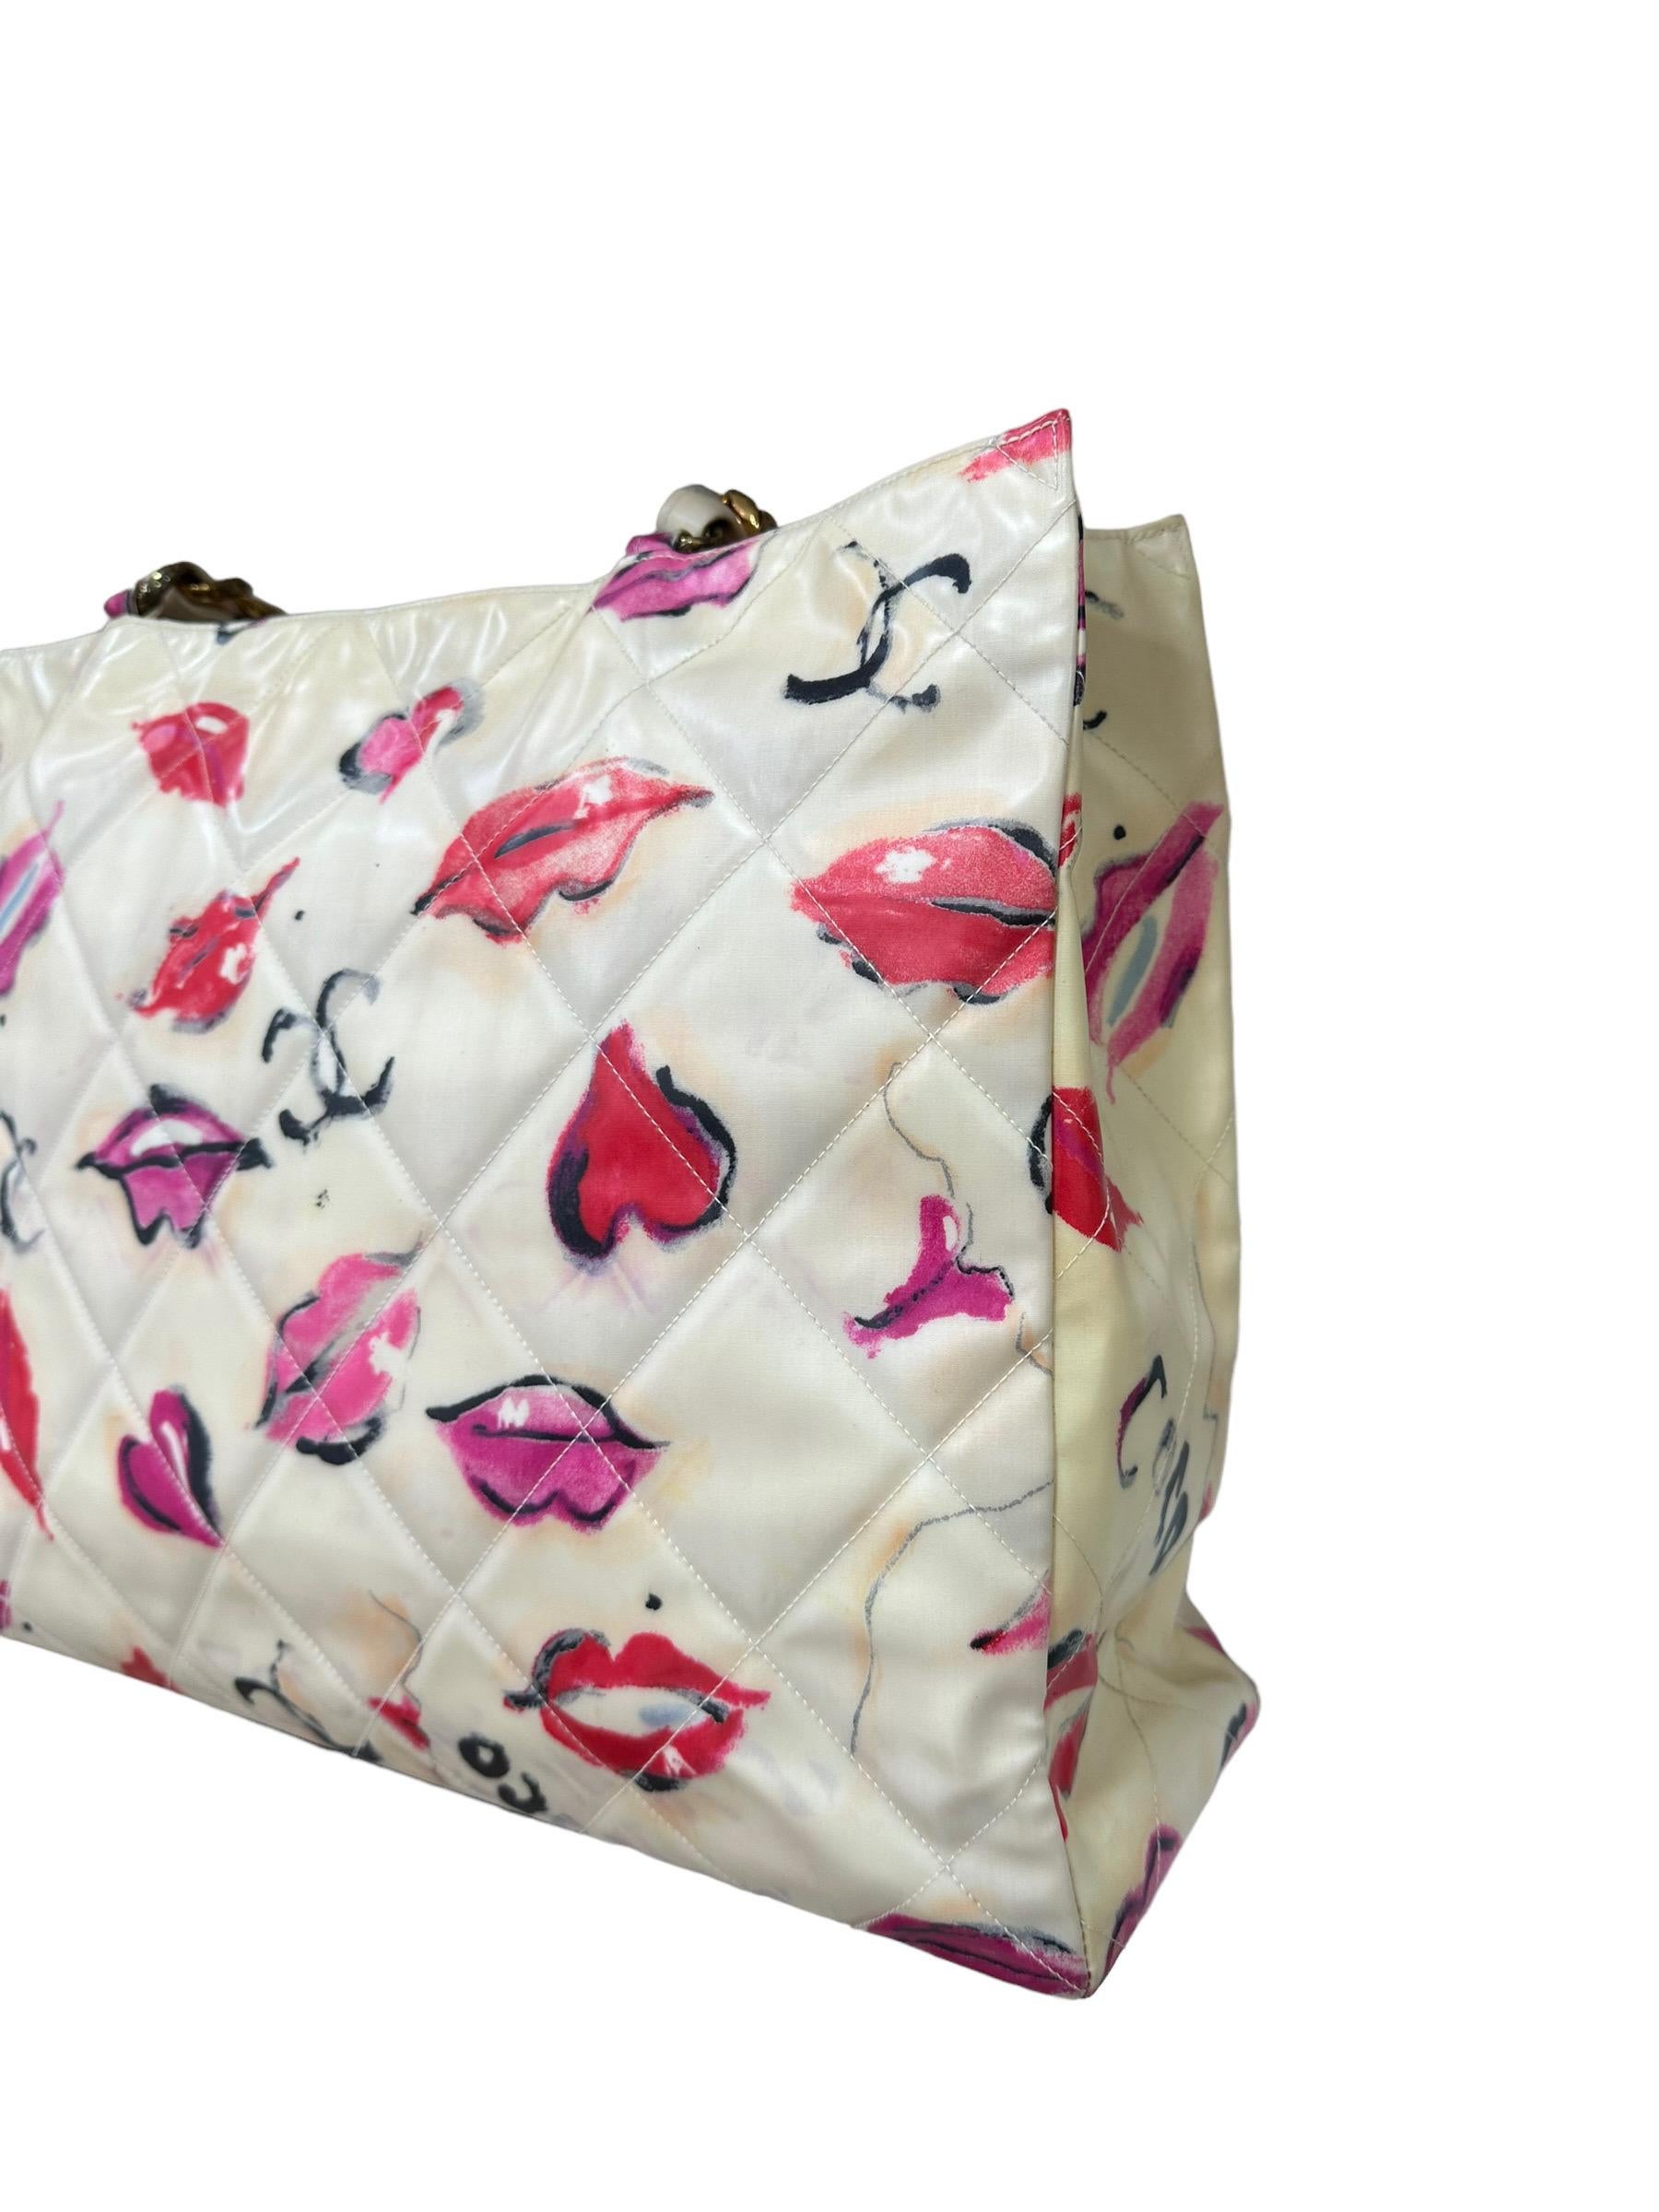 1994 Chanel Kisses & Lips Limited Edition Shoulder Bag For Sale 1